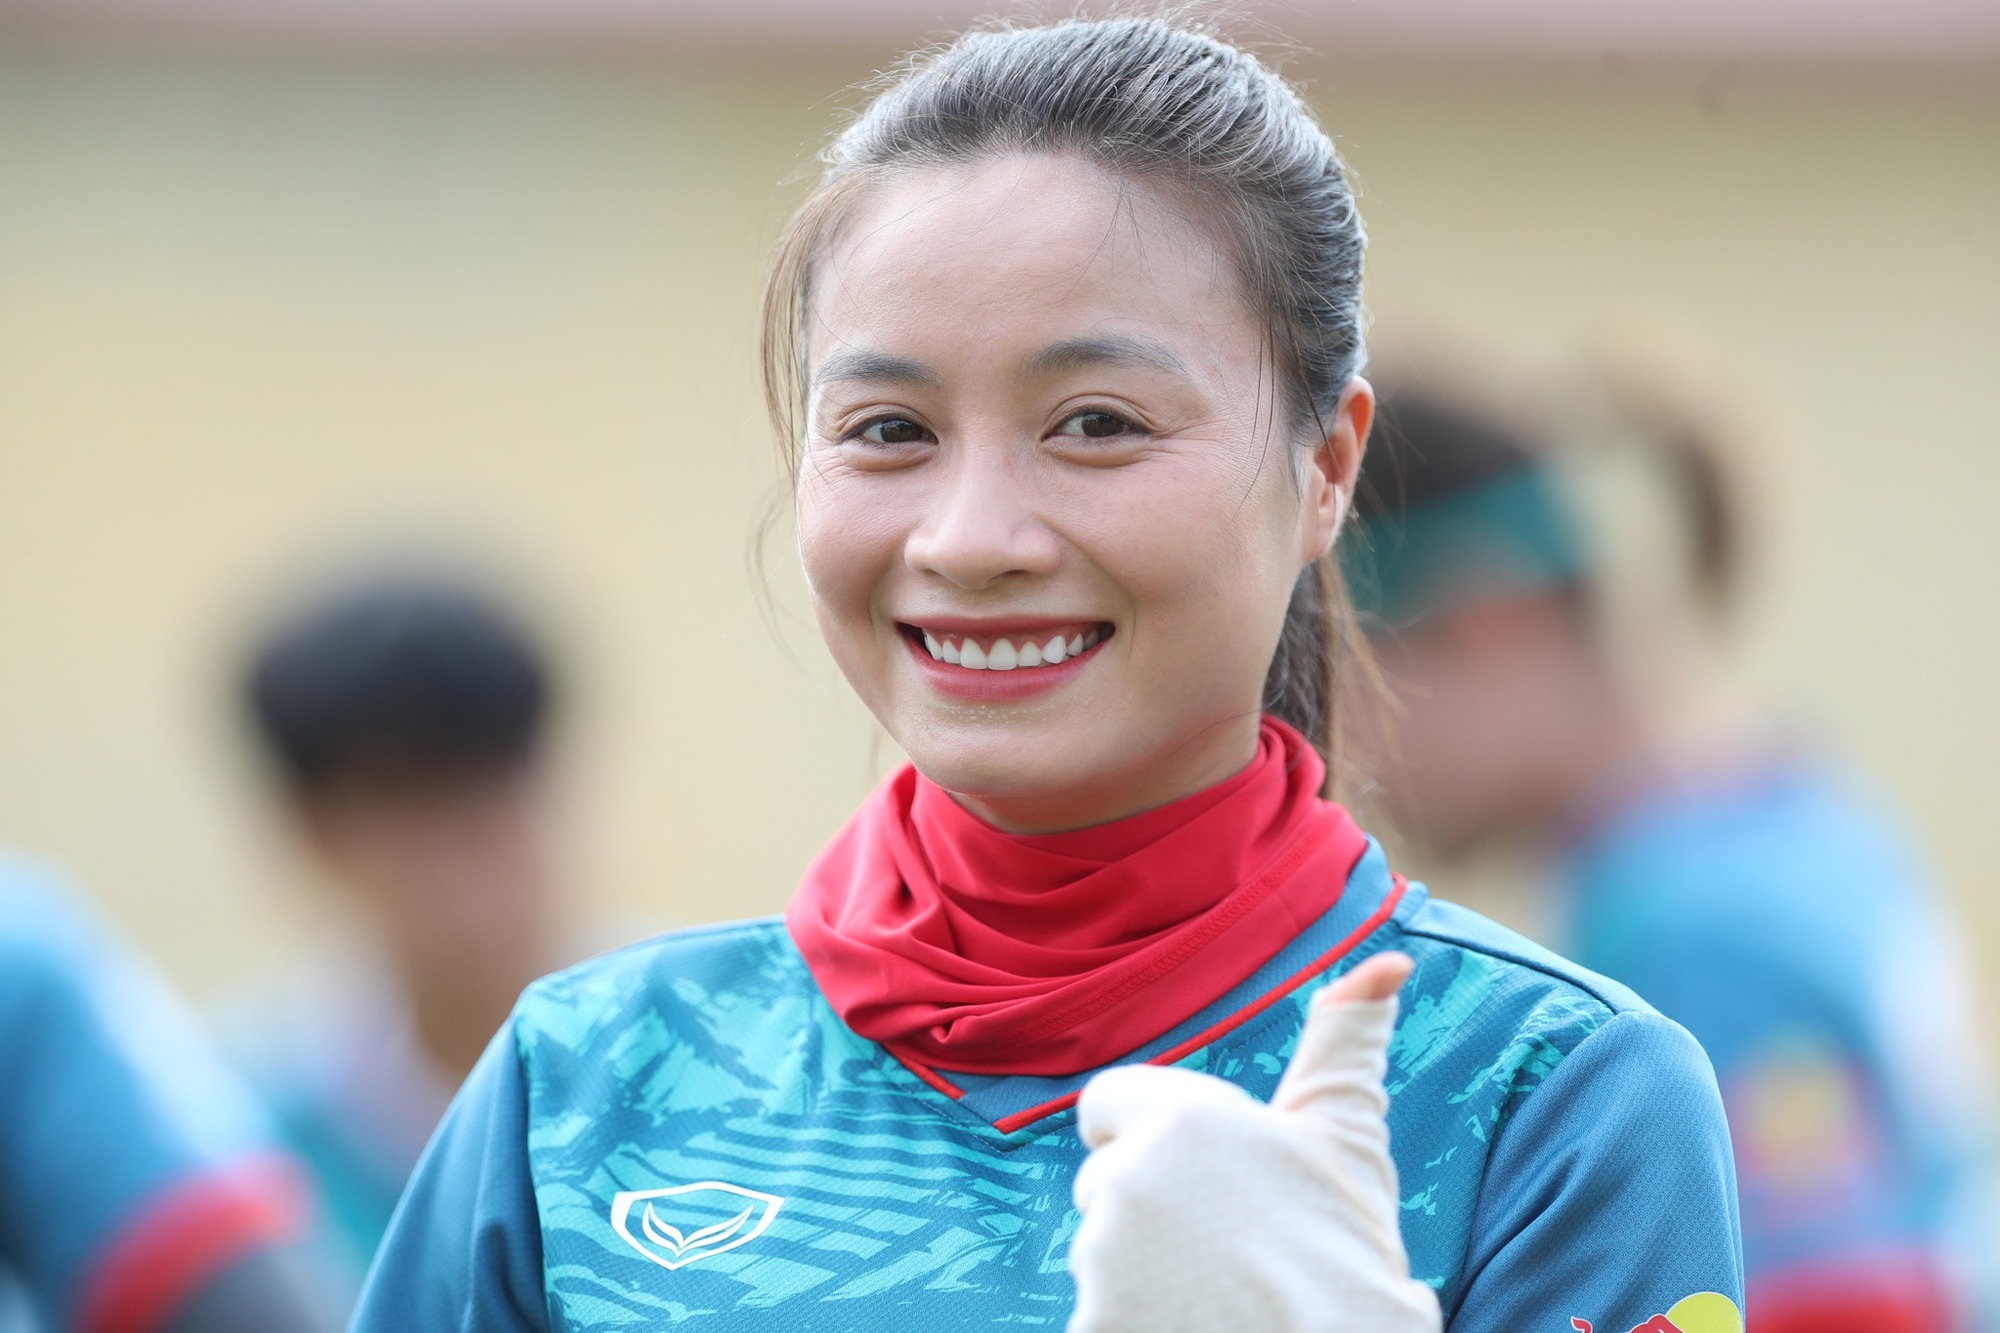 Hoàng Thị Loan (sinh 1995) đang thi đấu ở vị trí hậu vệ cho câu lạc bộ Hà Nội và đội tuyển nữ quốc gia Việt Nam.